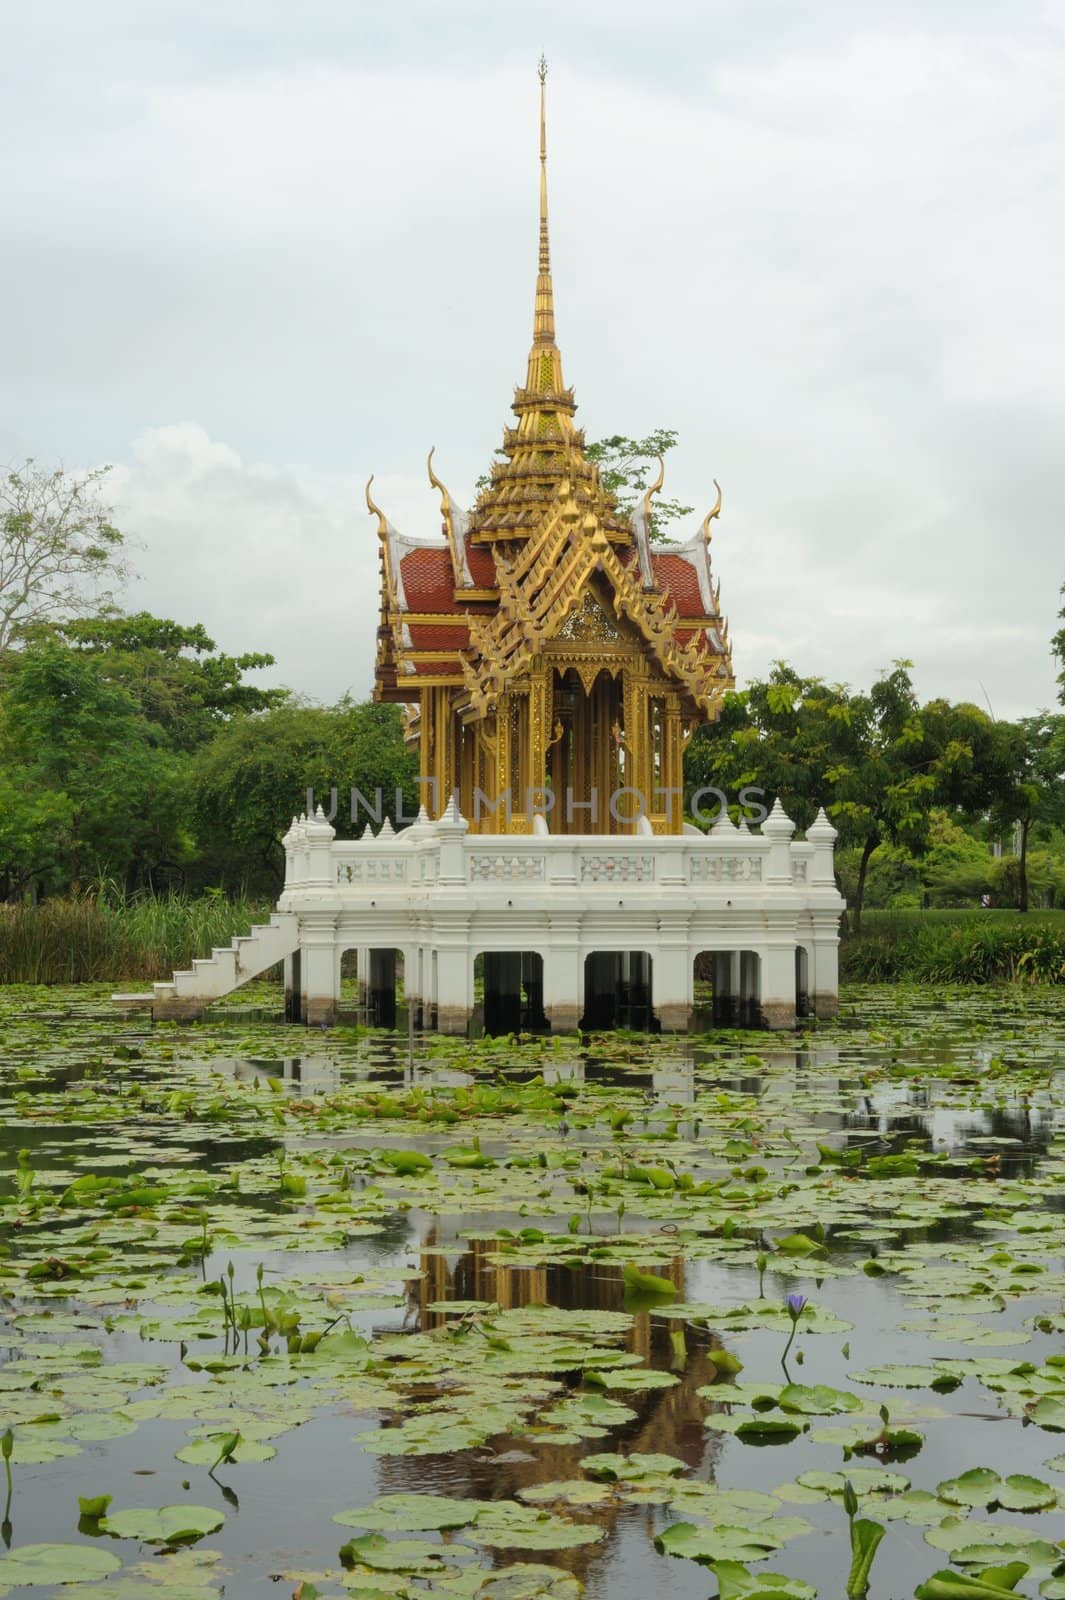 Thai pavilion in lotus pond at Suan Luang Rama IX. by ngungfoto